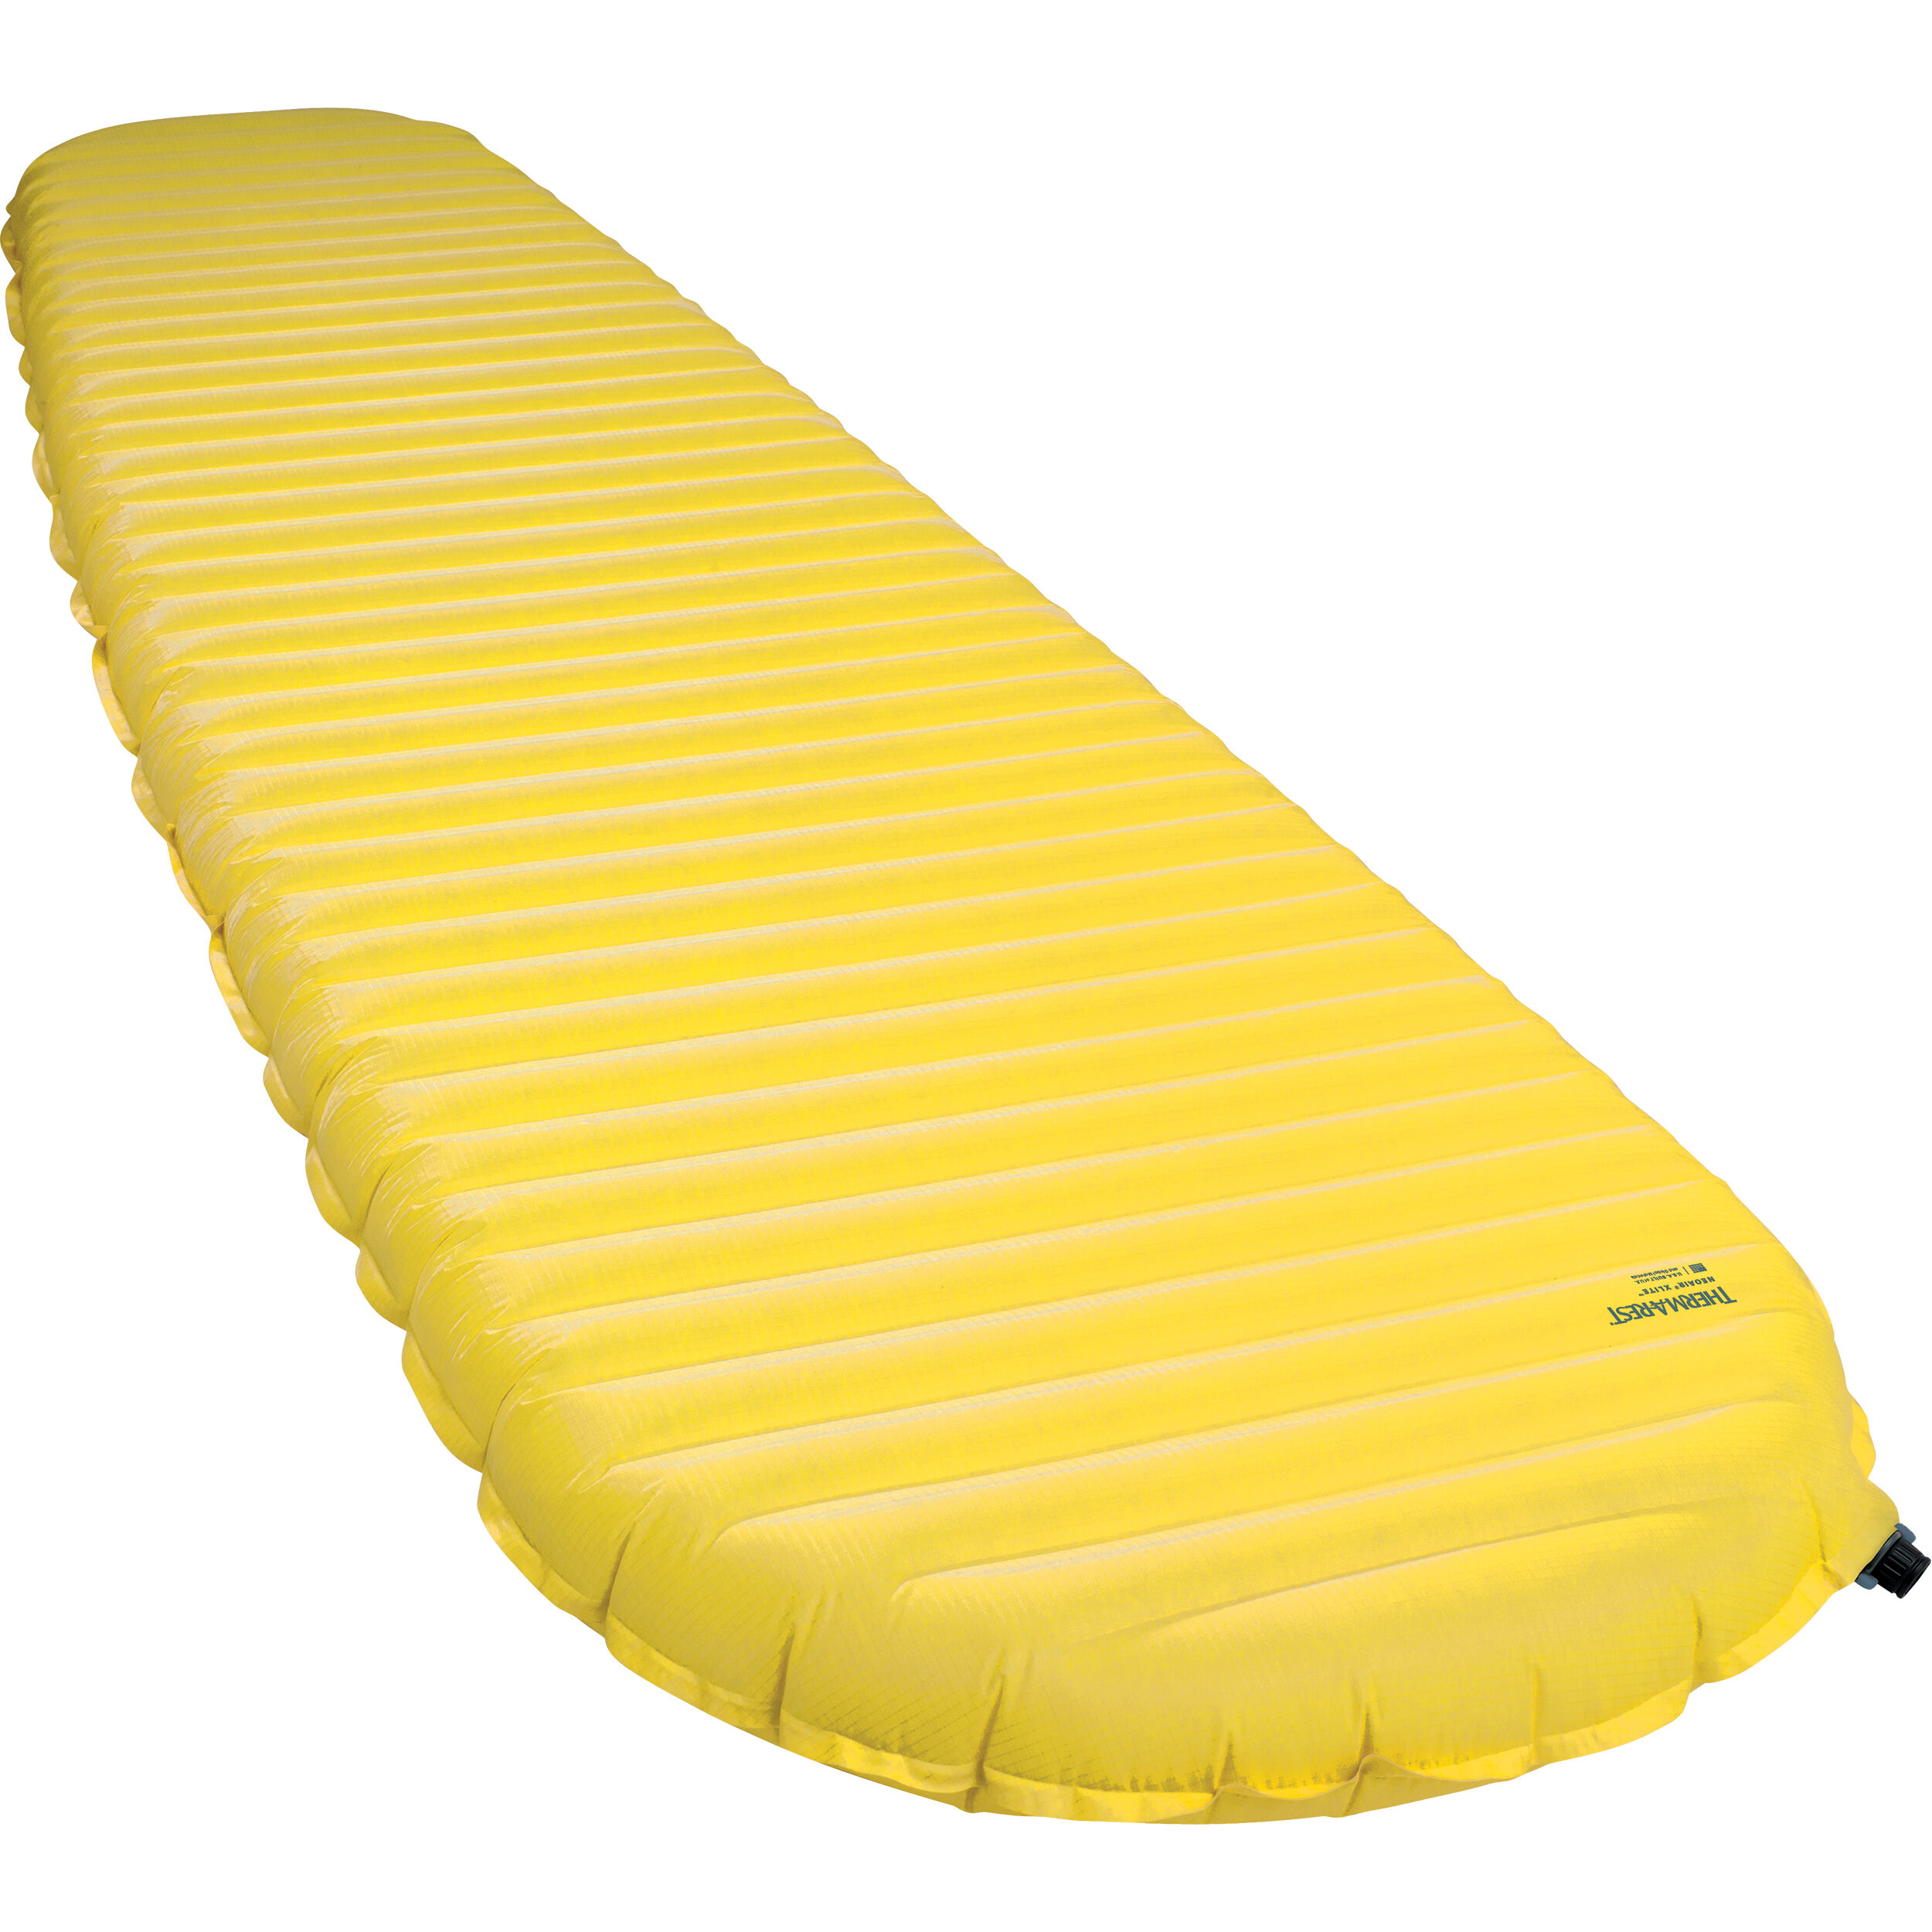 lightweight air mattress for backpacking